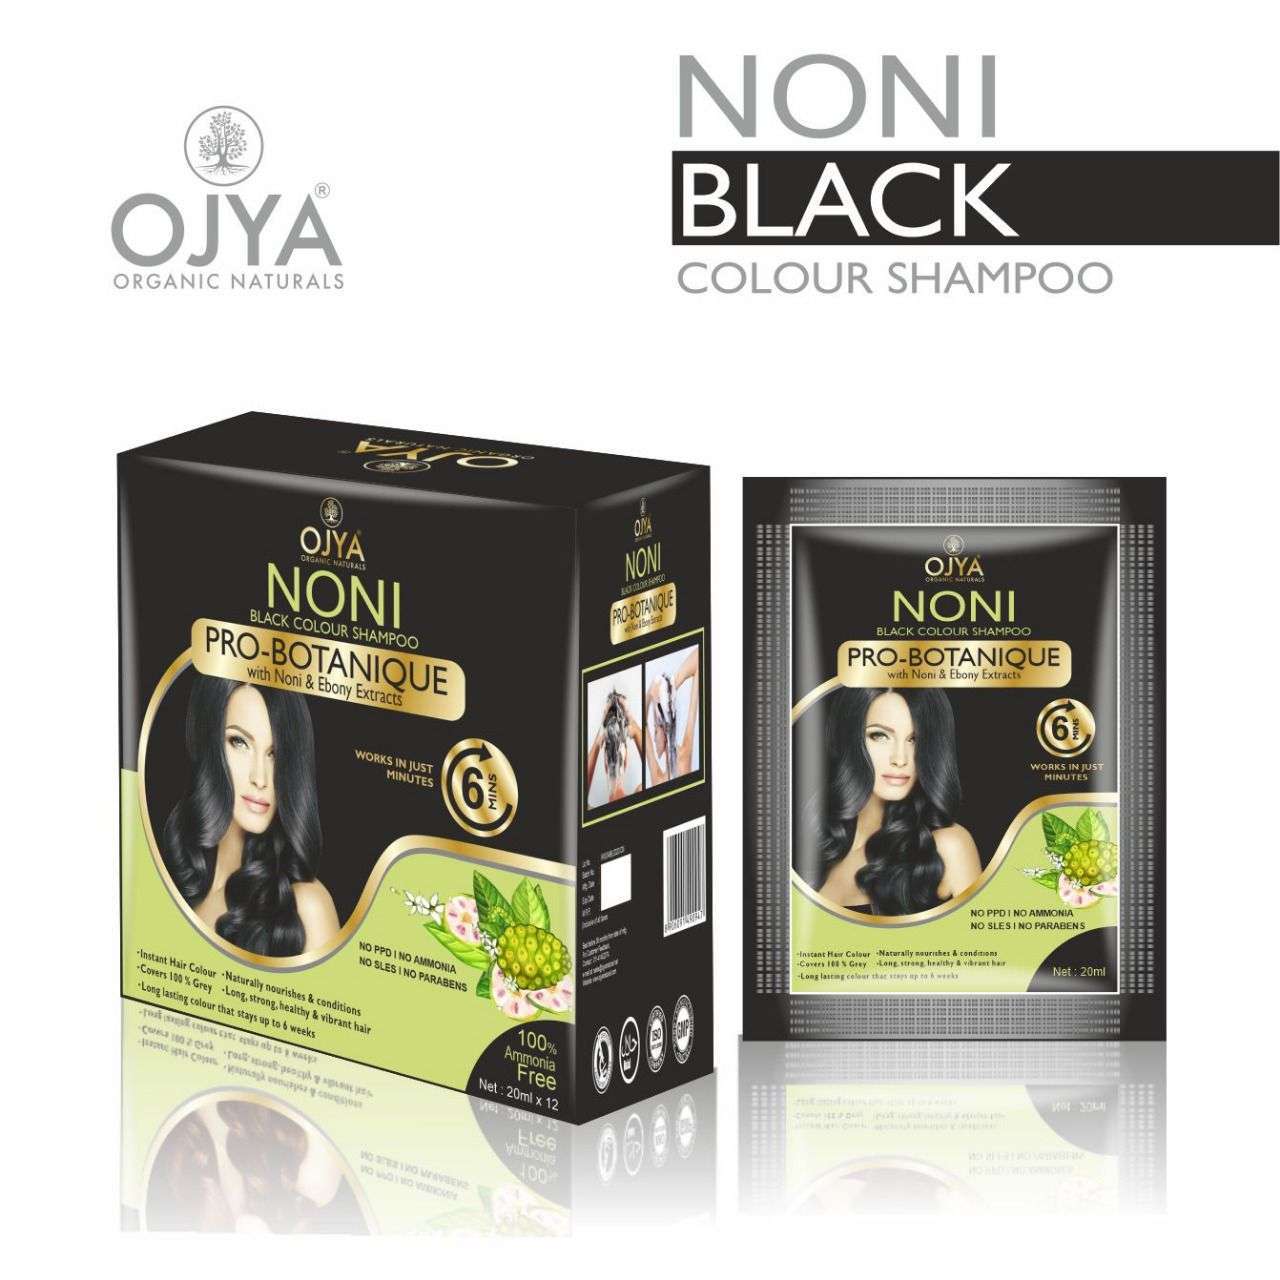 Priis BSY Noni Black Hair Magic Hair Dye Shampoo